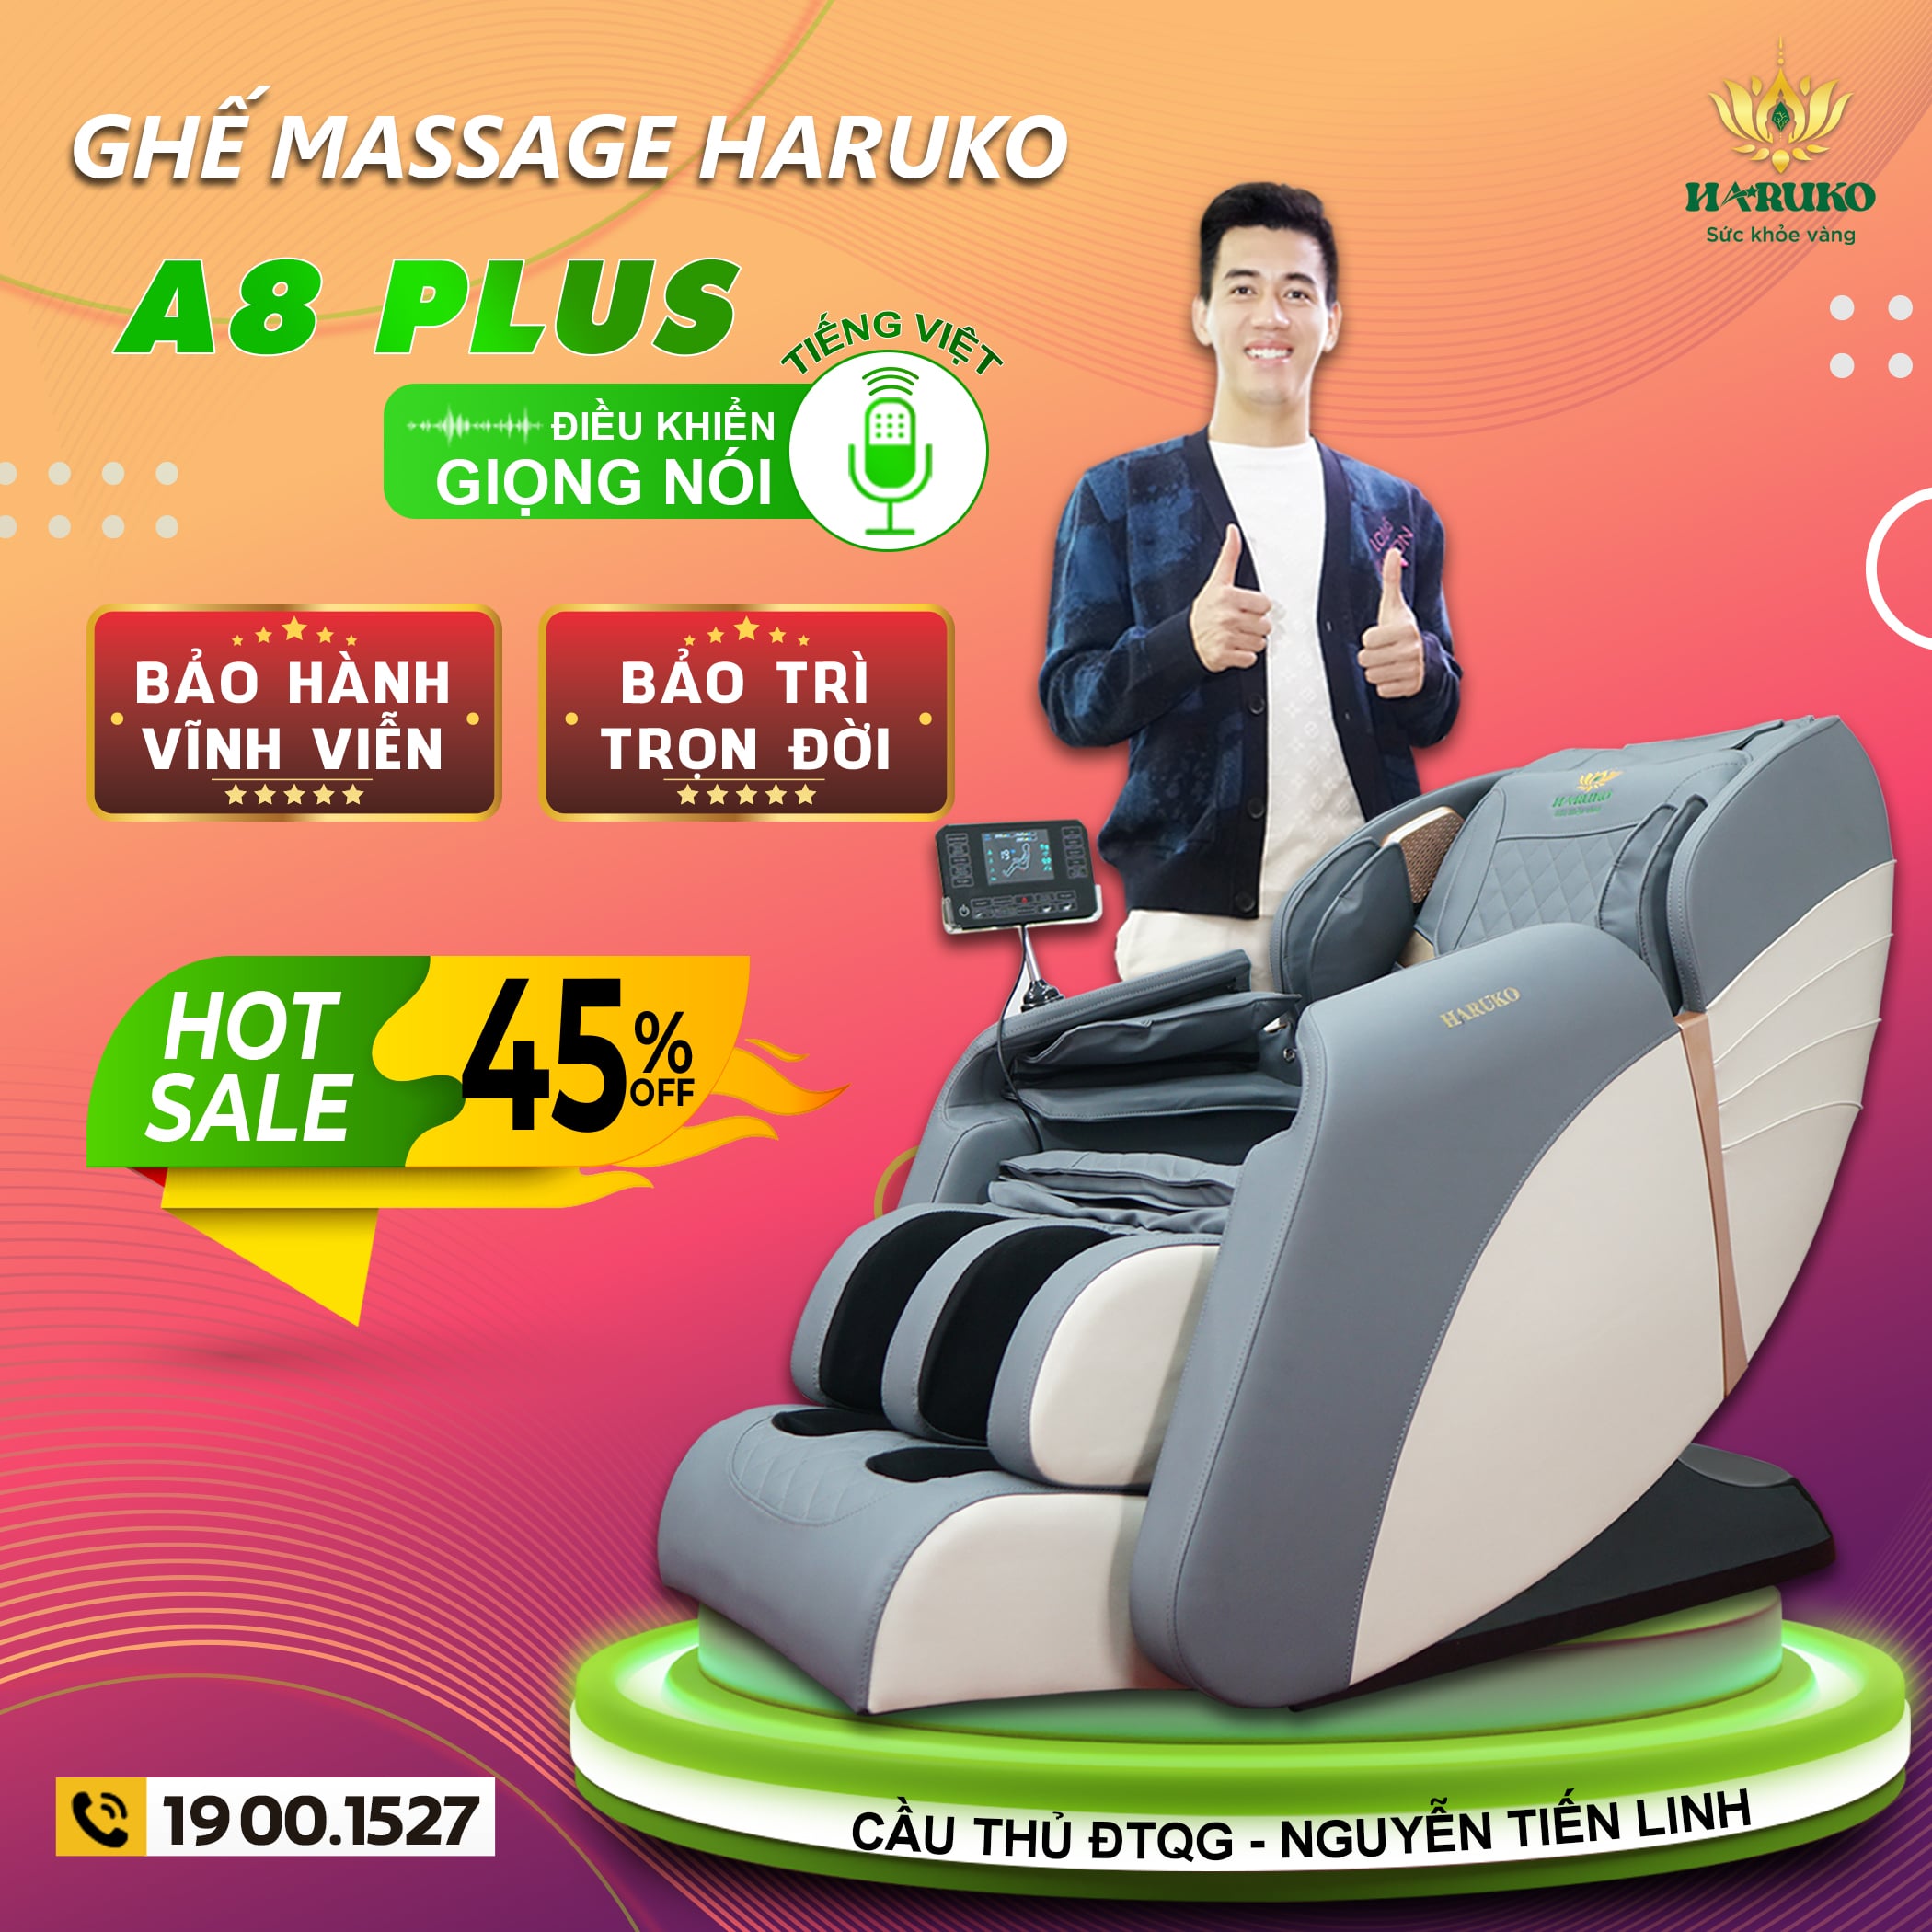 Ghế massage Haruko A8 Plus được thiết kế với con lăn 5D hiện đại và mức giá phù hợp với tài chính của hầu hết mọi người